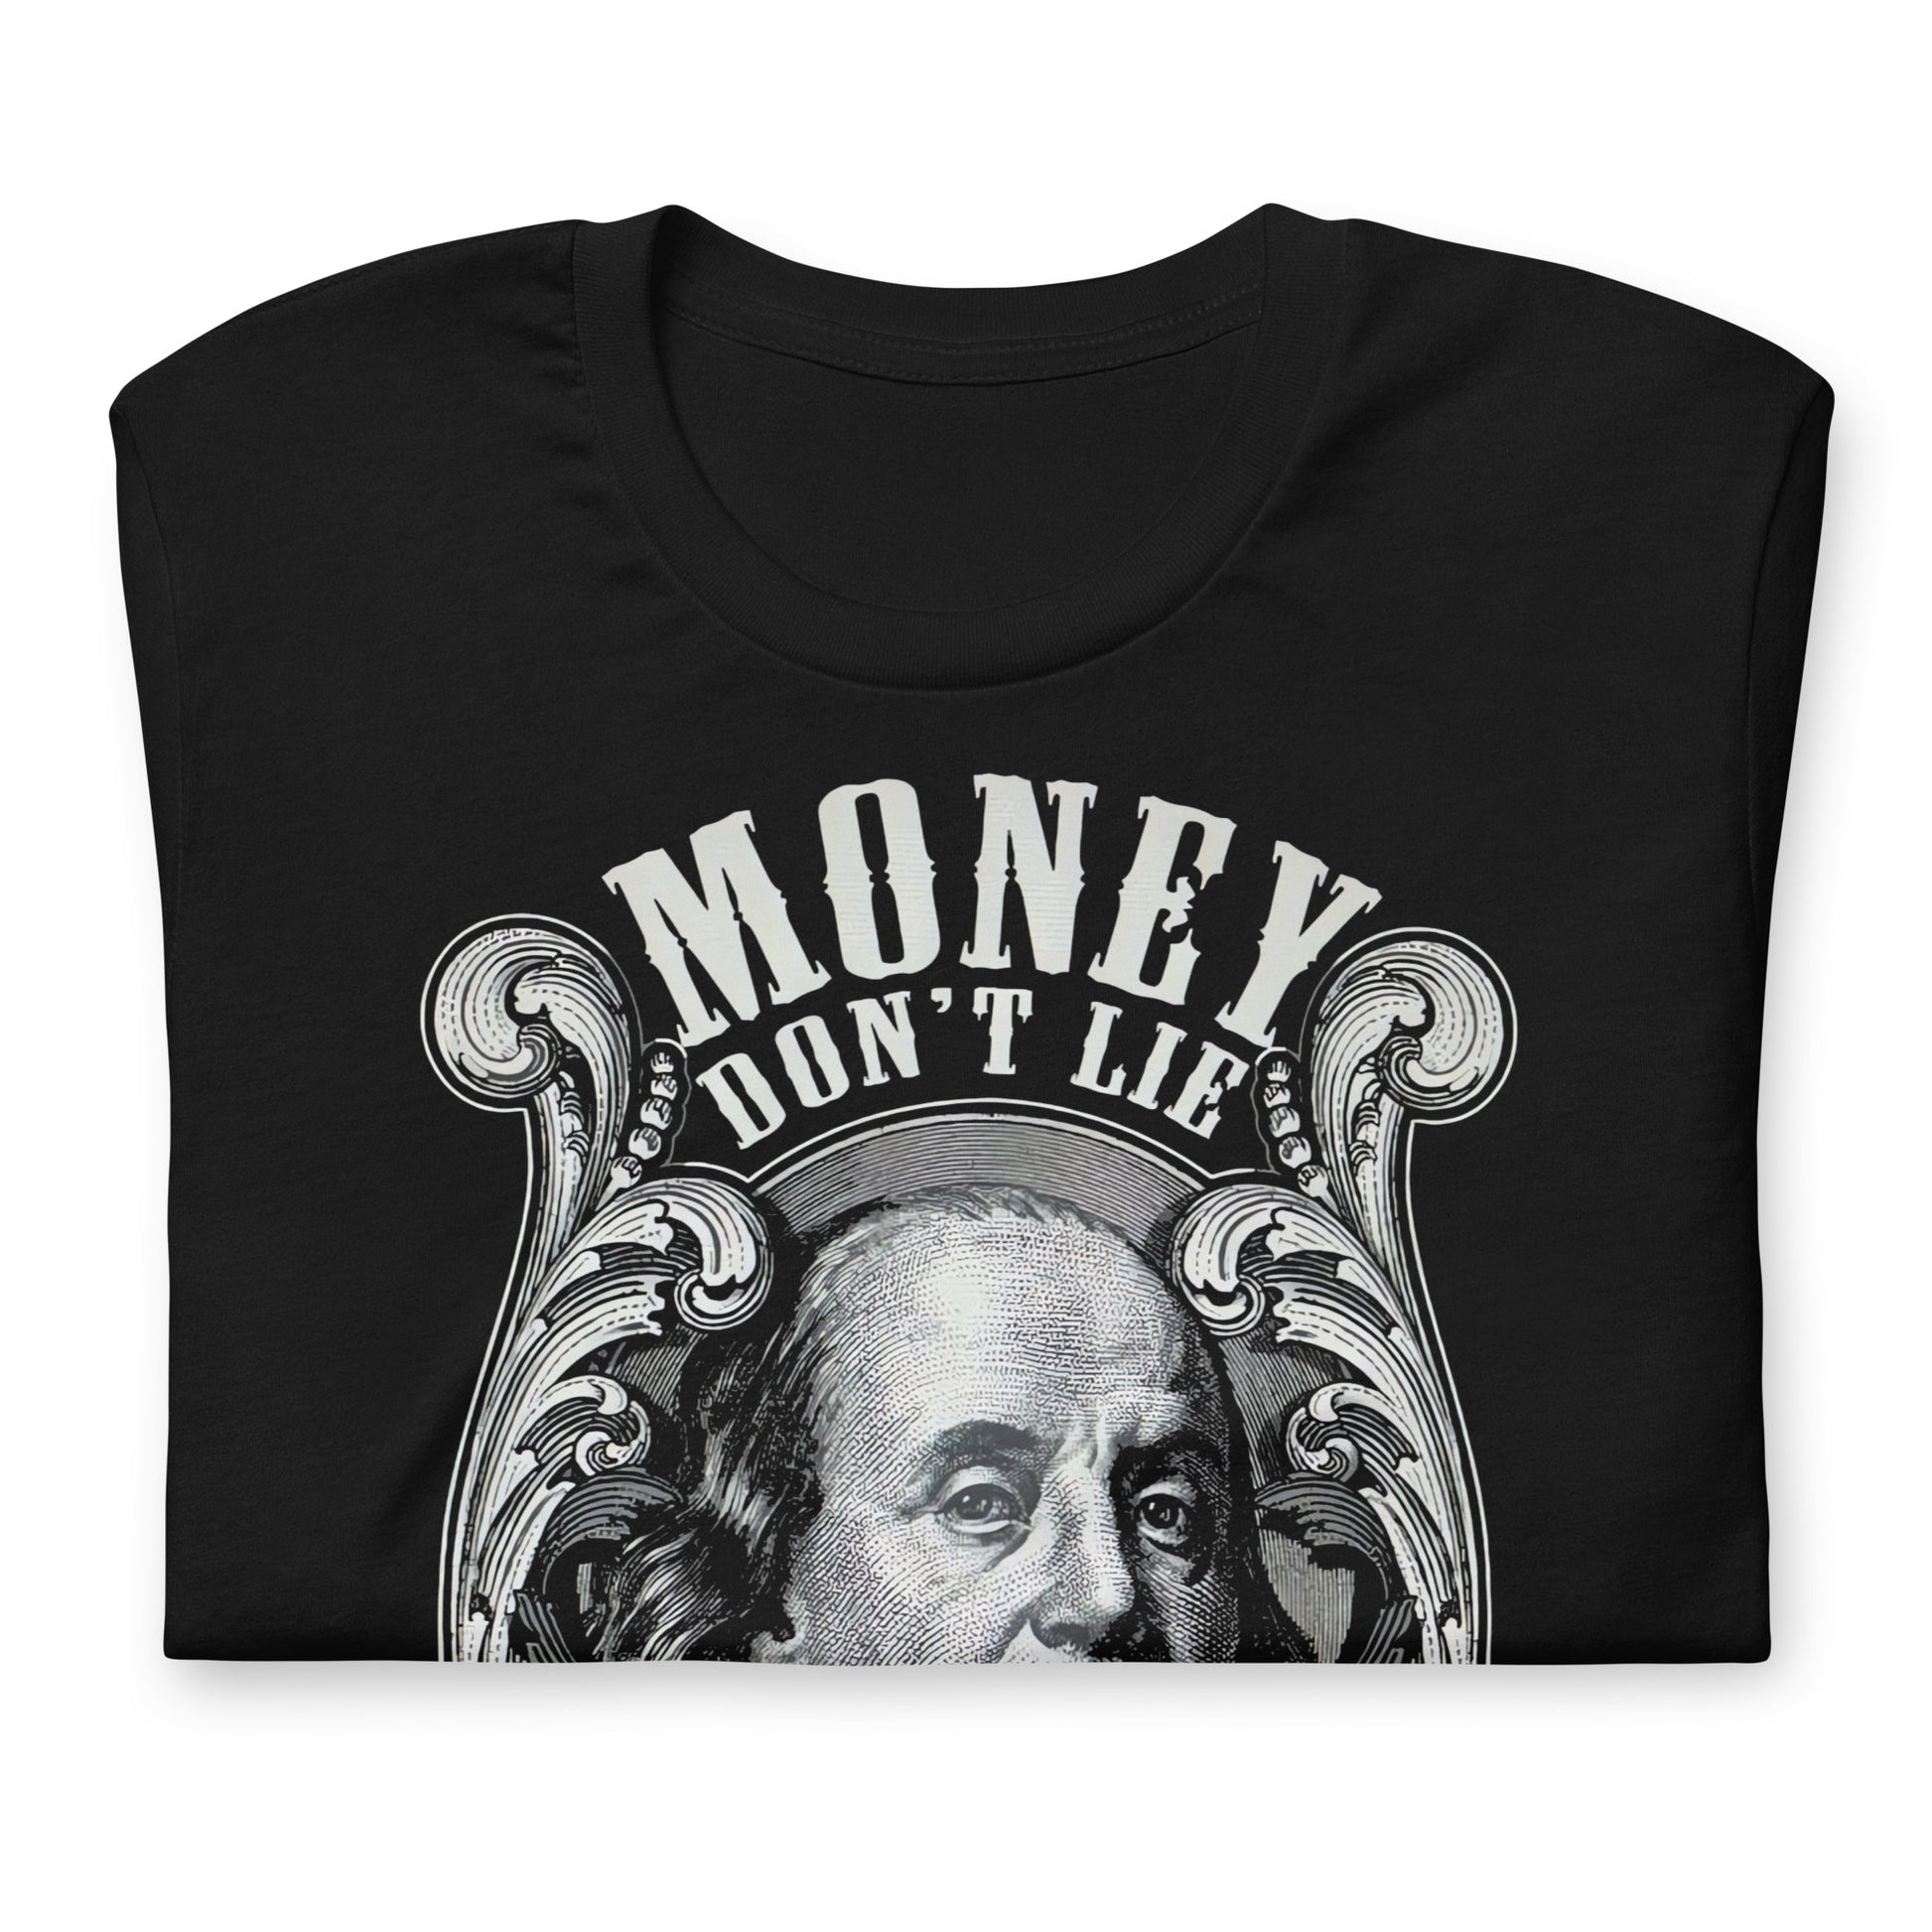 Camiseta Money Don't Lie: Descubre calidad excepcional y estampados duraderos. Encuentra estilo y orgullo en cada prenda.